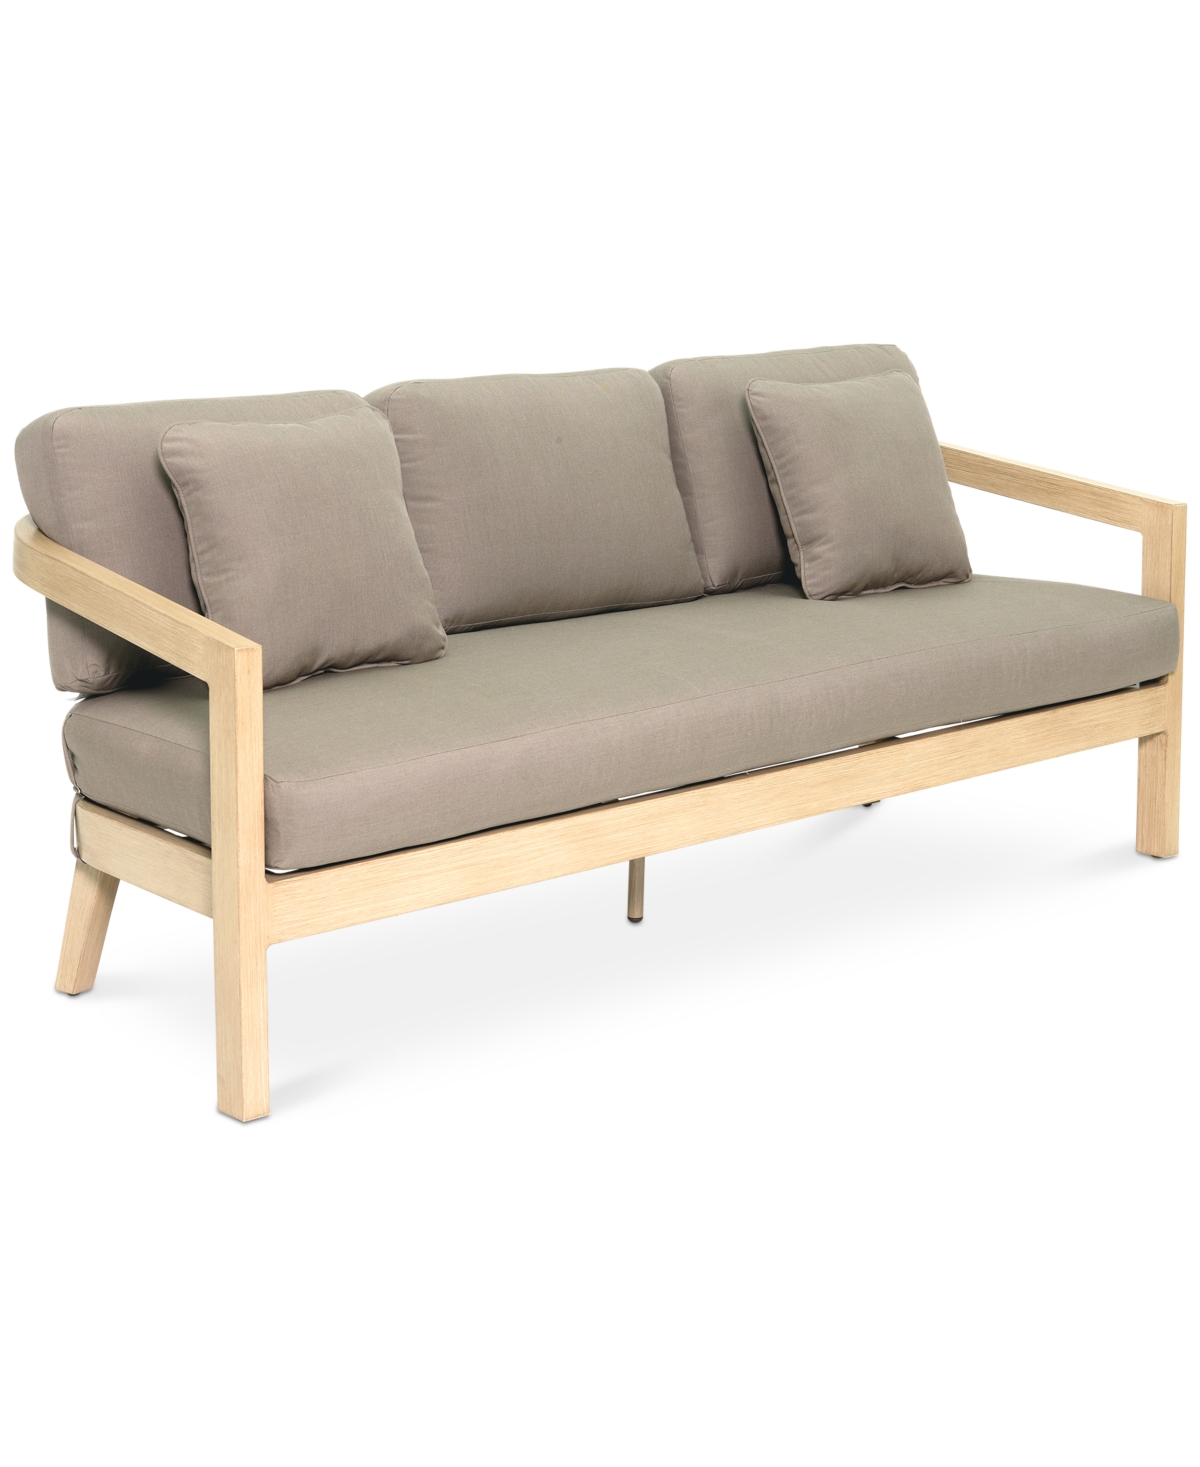 Agio Reid Outdoor Sofa, Created For Macy's In Solartex Bark